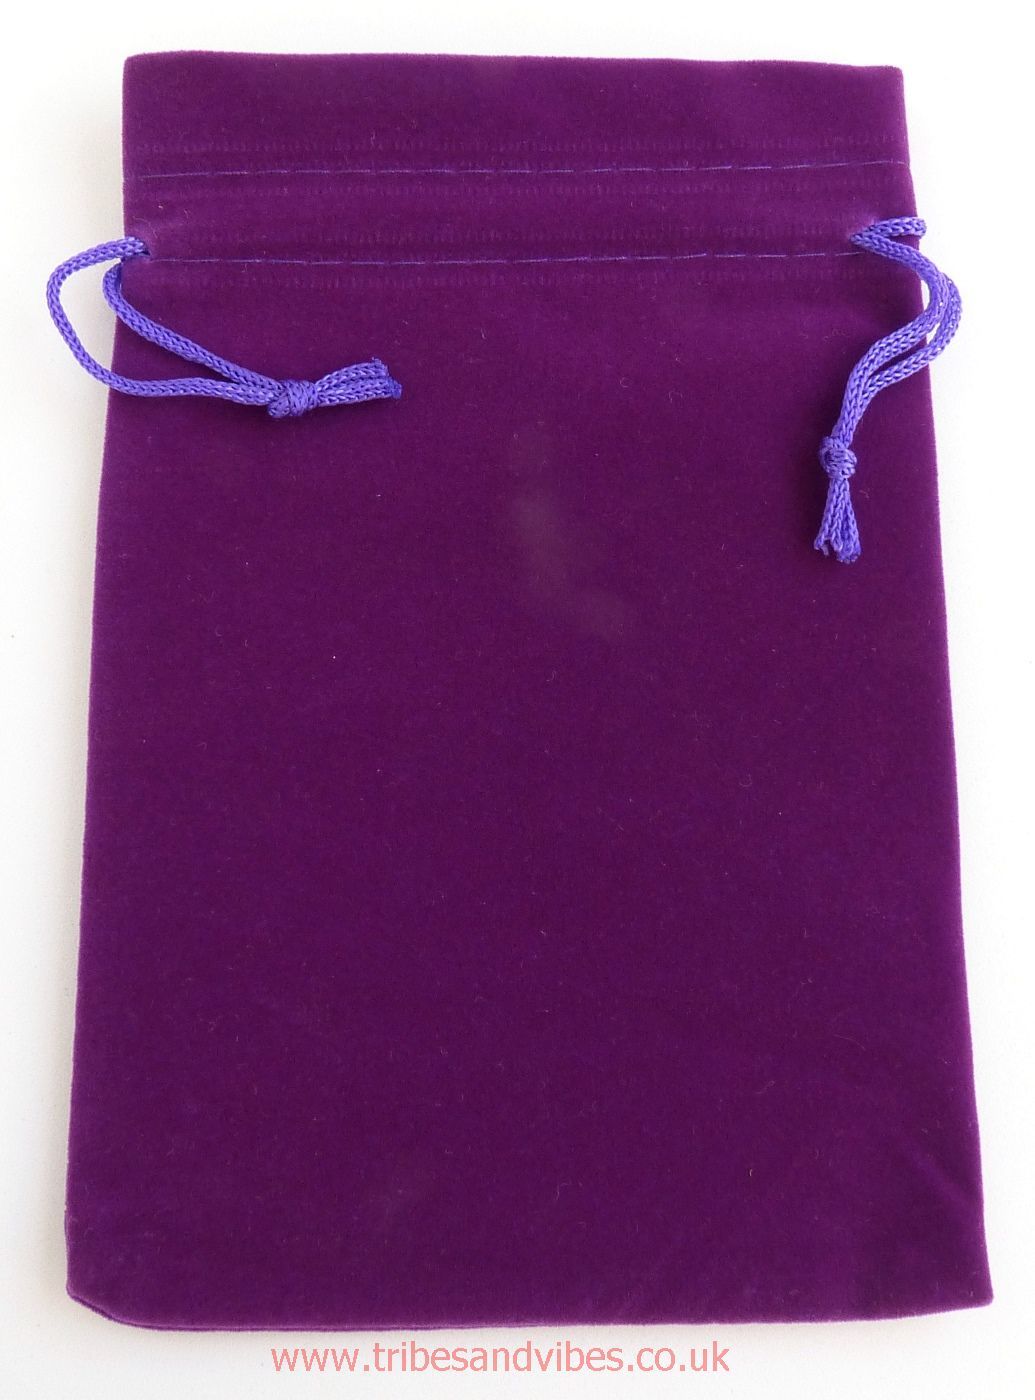 Velvet Purple Drawstring Pouch Gift Bag 17cm x 12cm - ideal for Tarot Cards